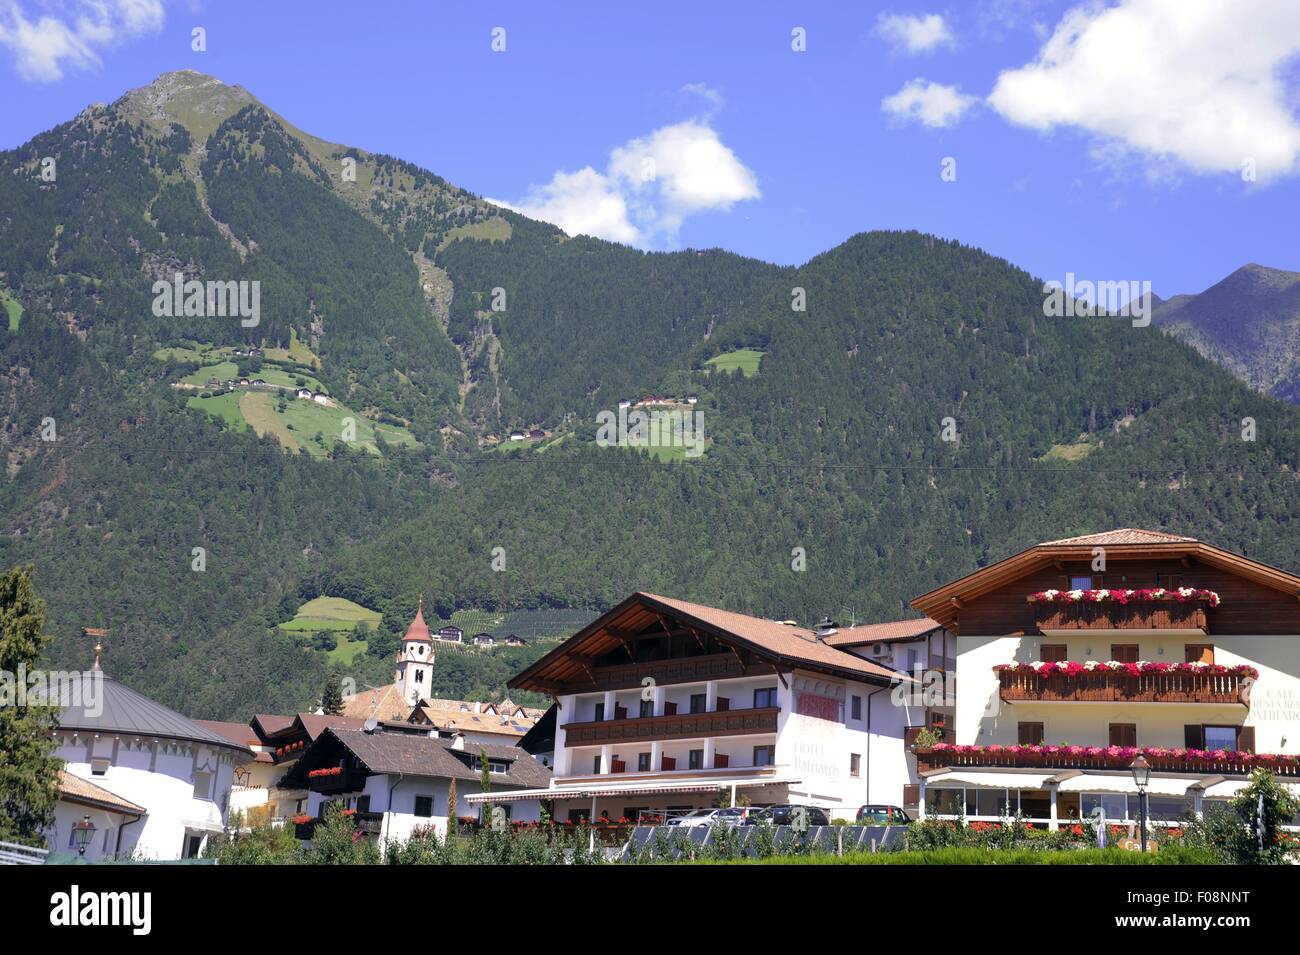 Alto Adige (Italia settentrionale), case tipiche del paese di Tirolo presso Merano Foto Stock